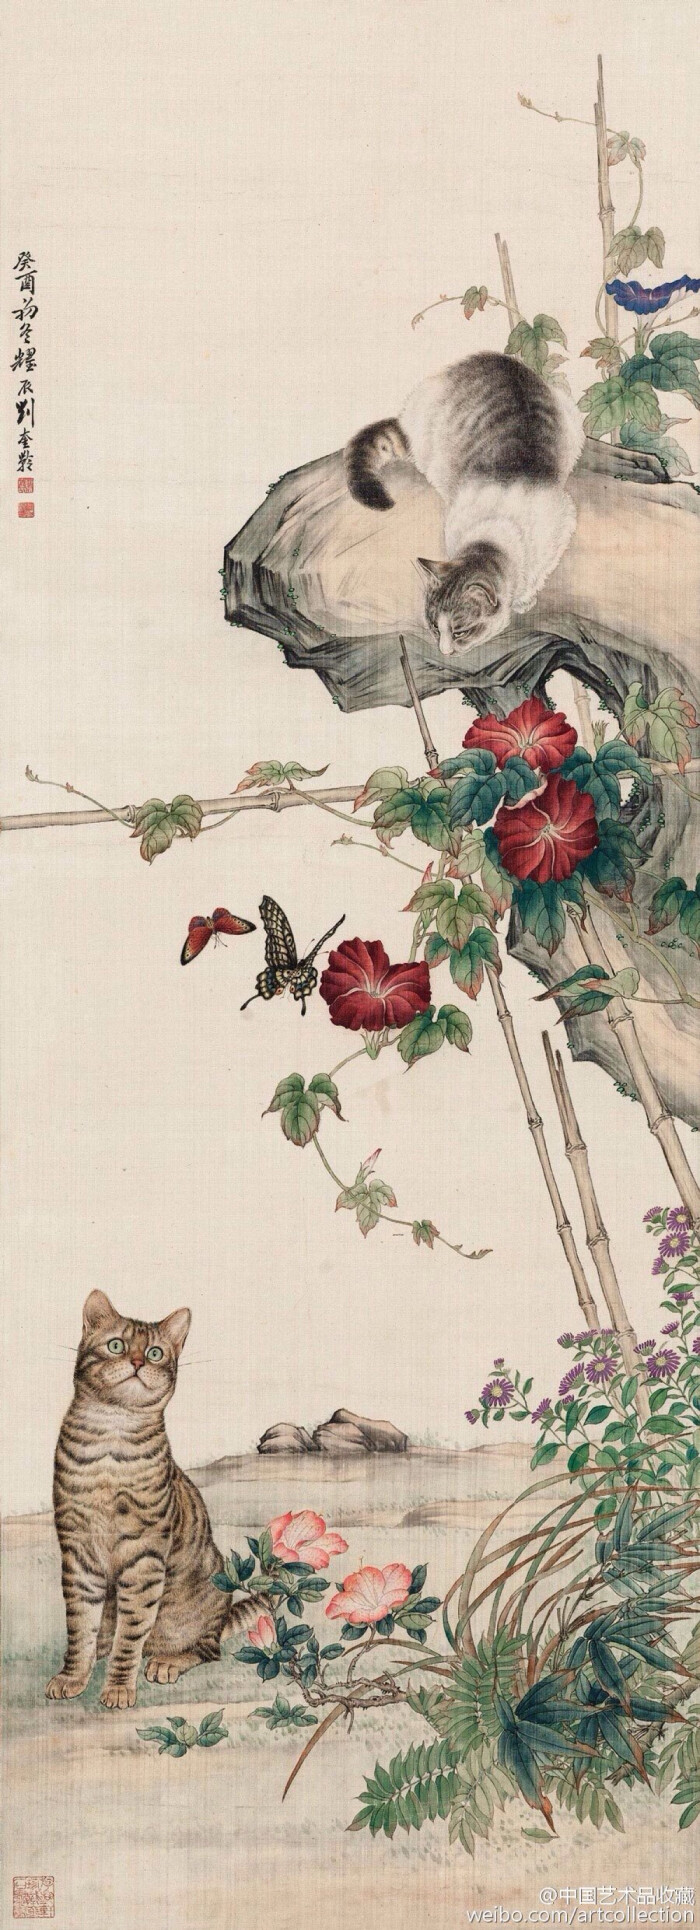 【 刘奎龄 《禽兽图》 】刘奎龄(1885-1967)是现代著名的动物画家.